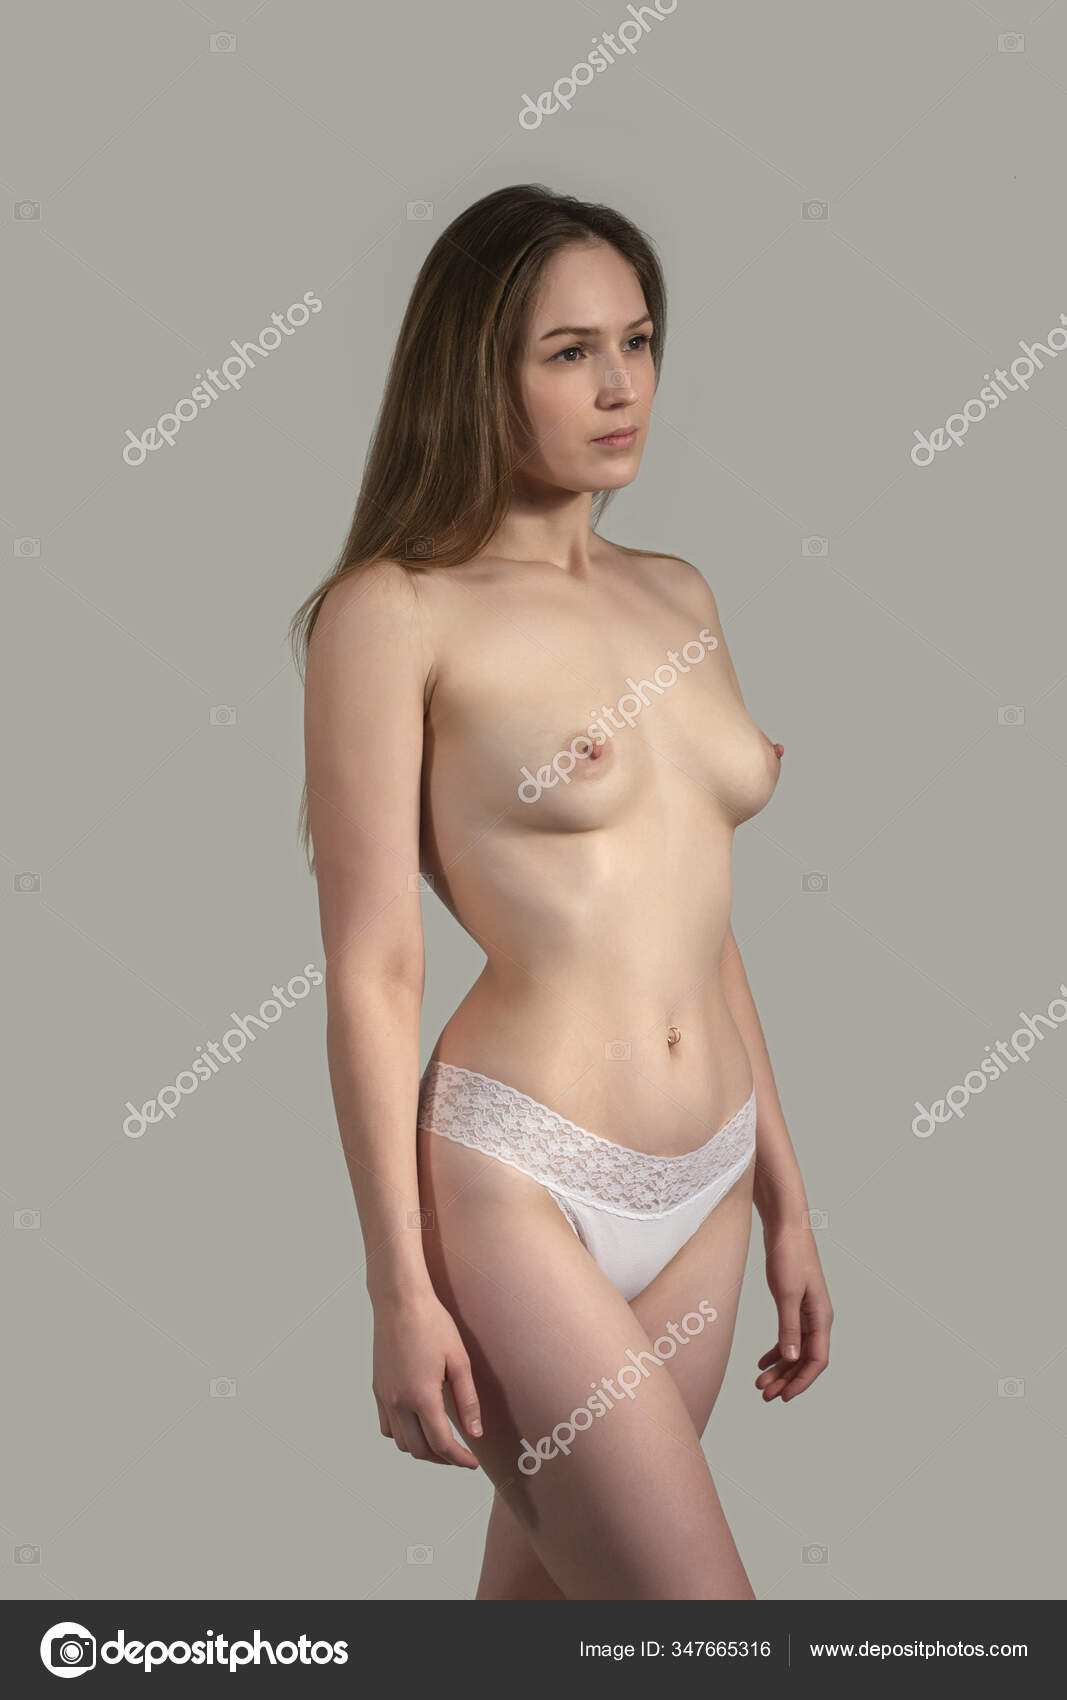 https://st3n.depositphotos.com/2970081/34766/i/1600/depositphotos_347665316-stock-photo-young-sexy-girl-nude-beautiful.jpg